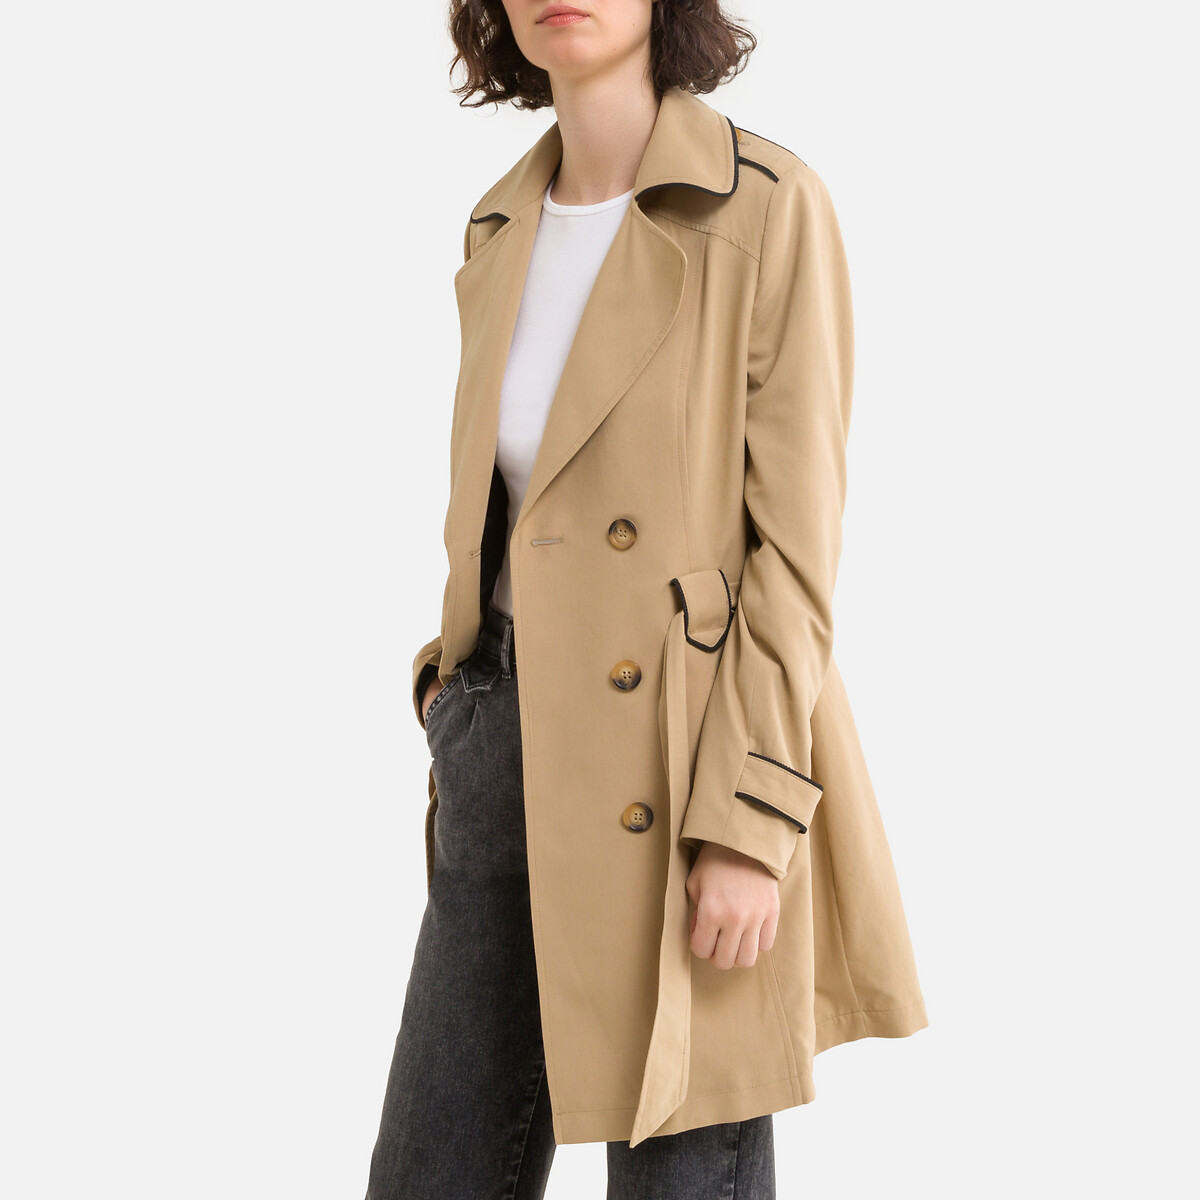 discount 98% Black 40                  EU Naf Naf Duffel coat WOMEN FASHION Coats Cloth 